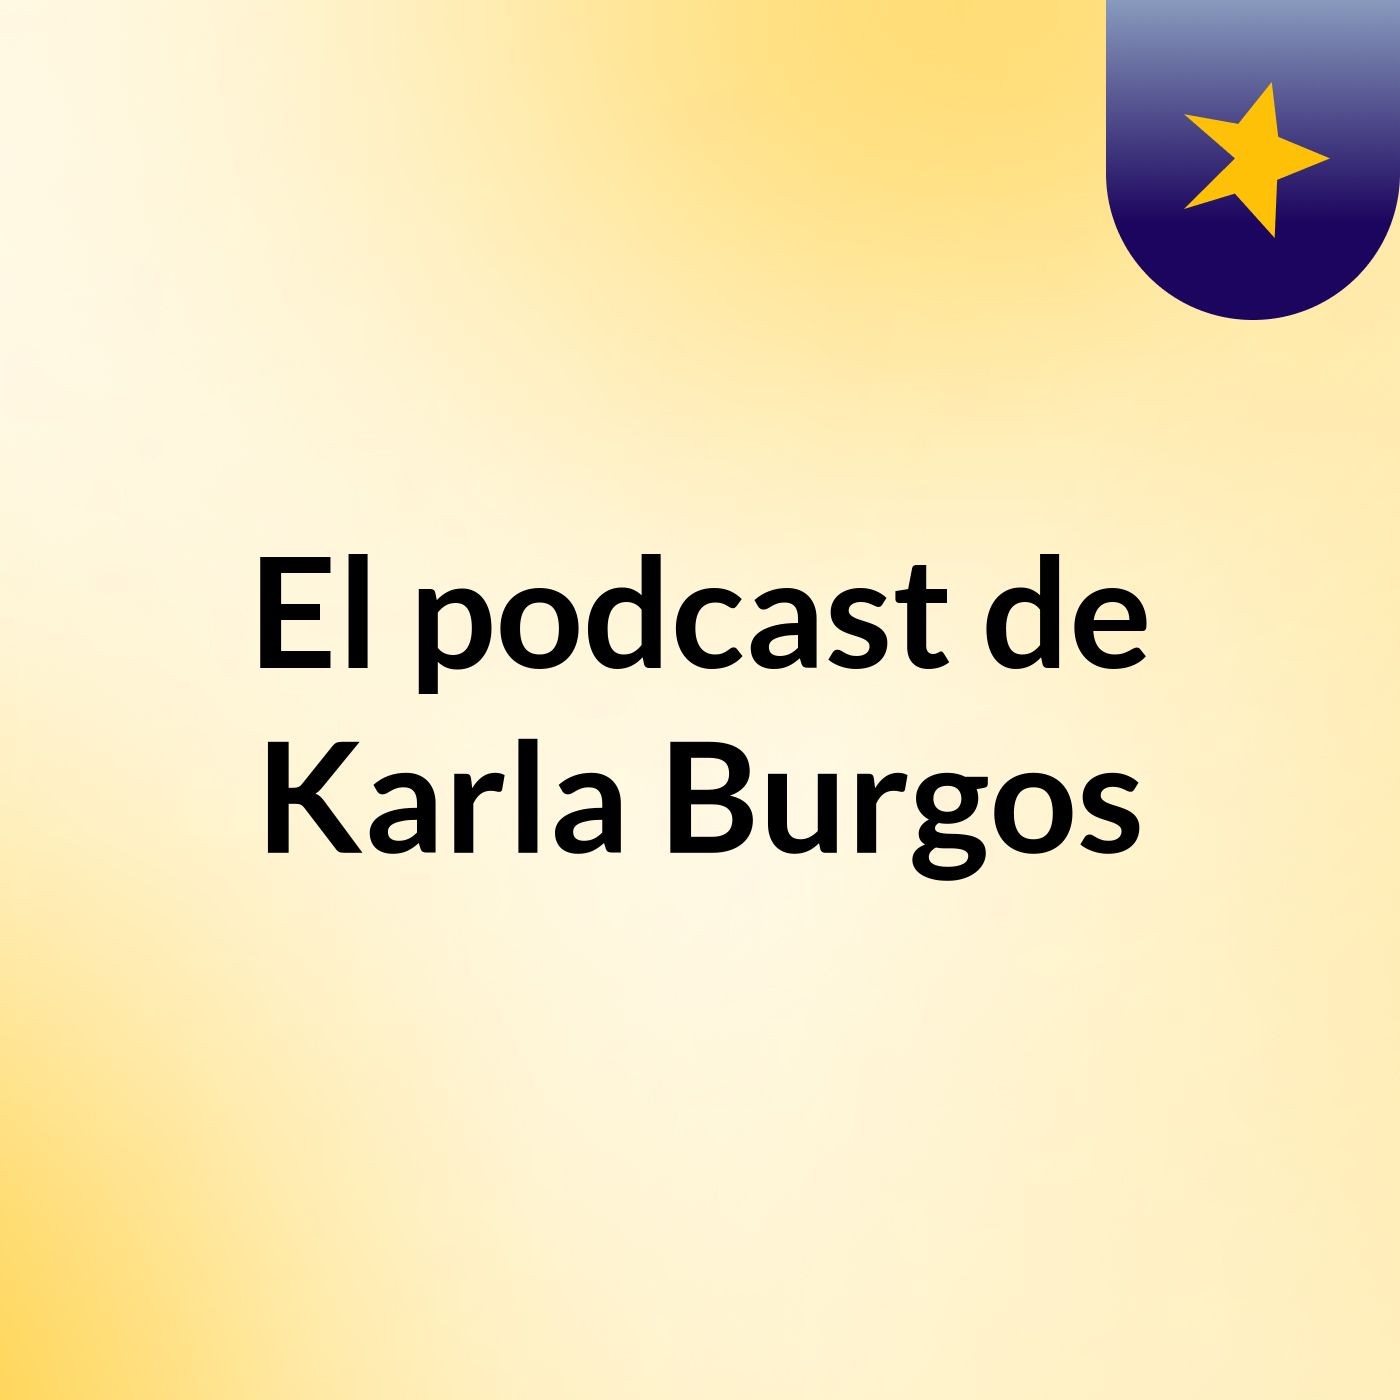 El podcast de Karla Burgos